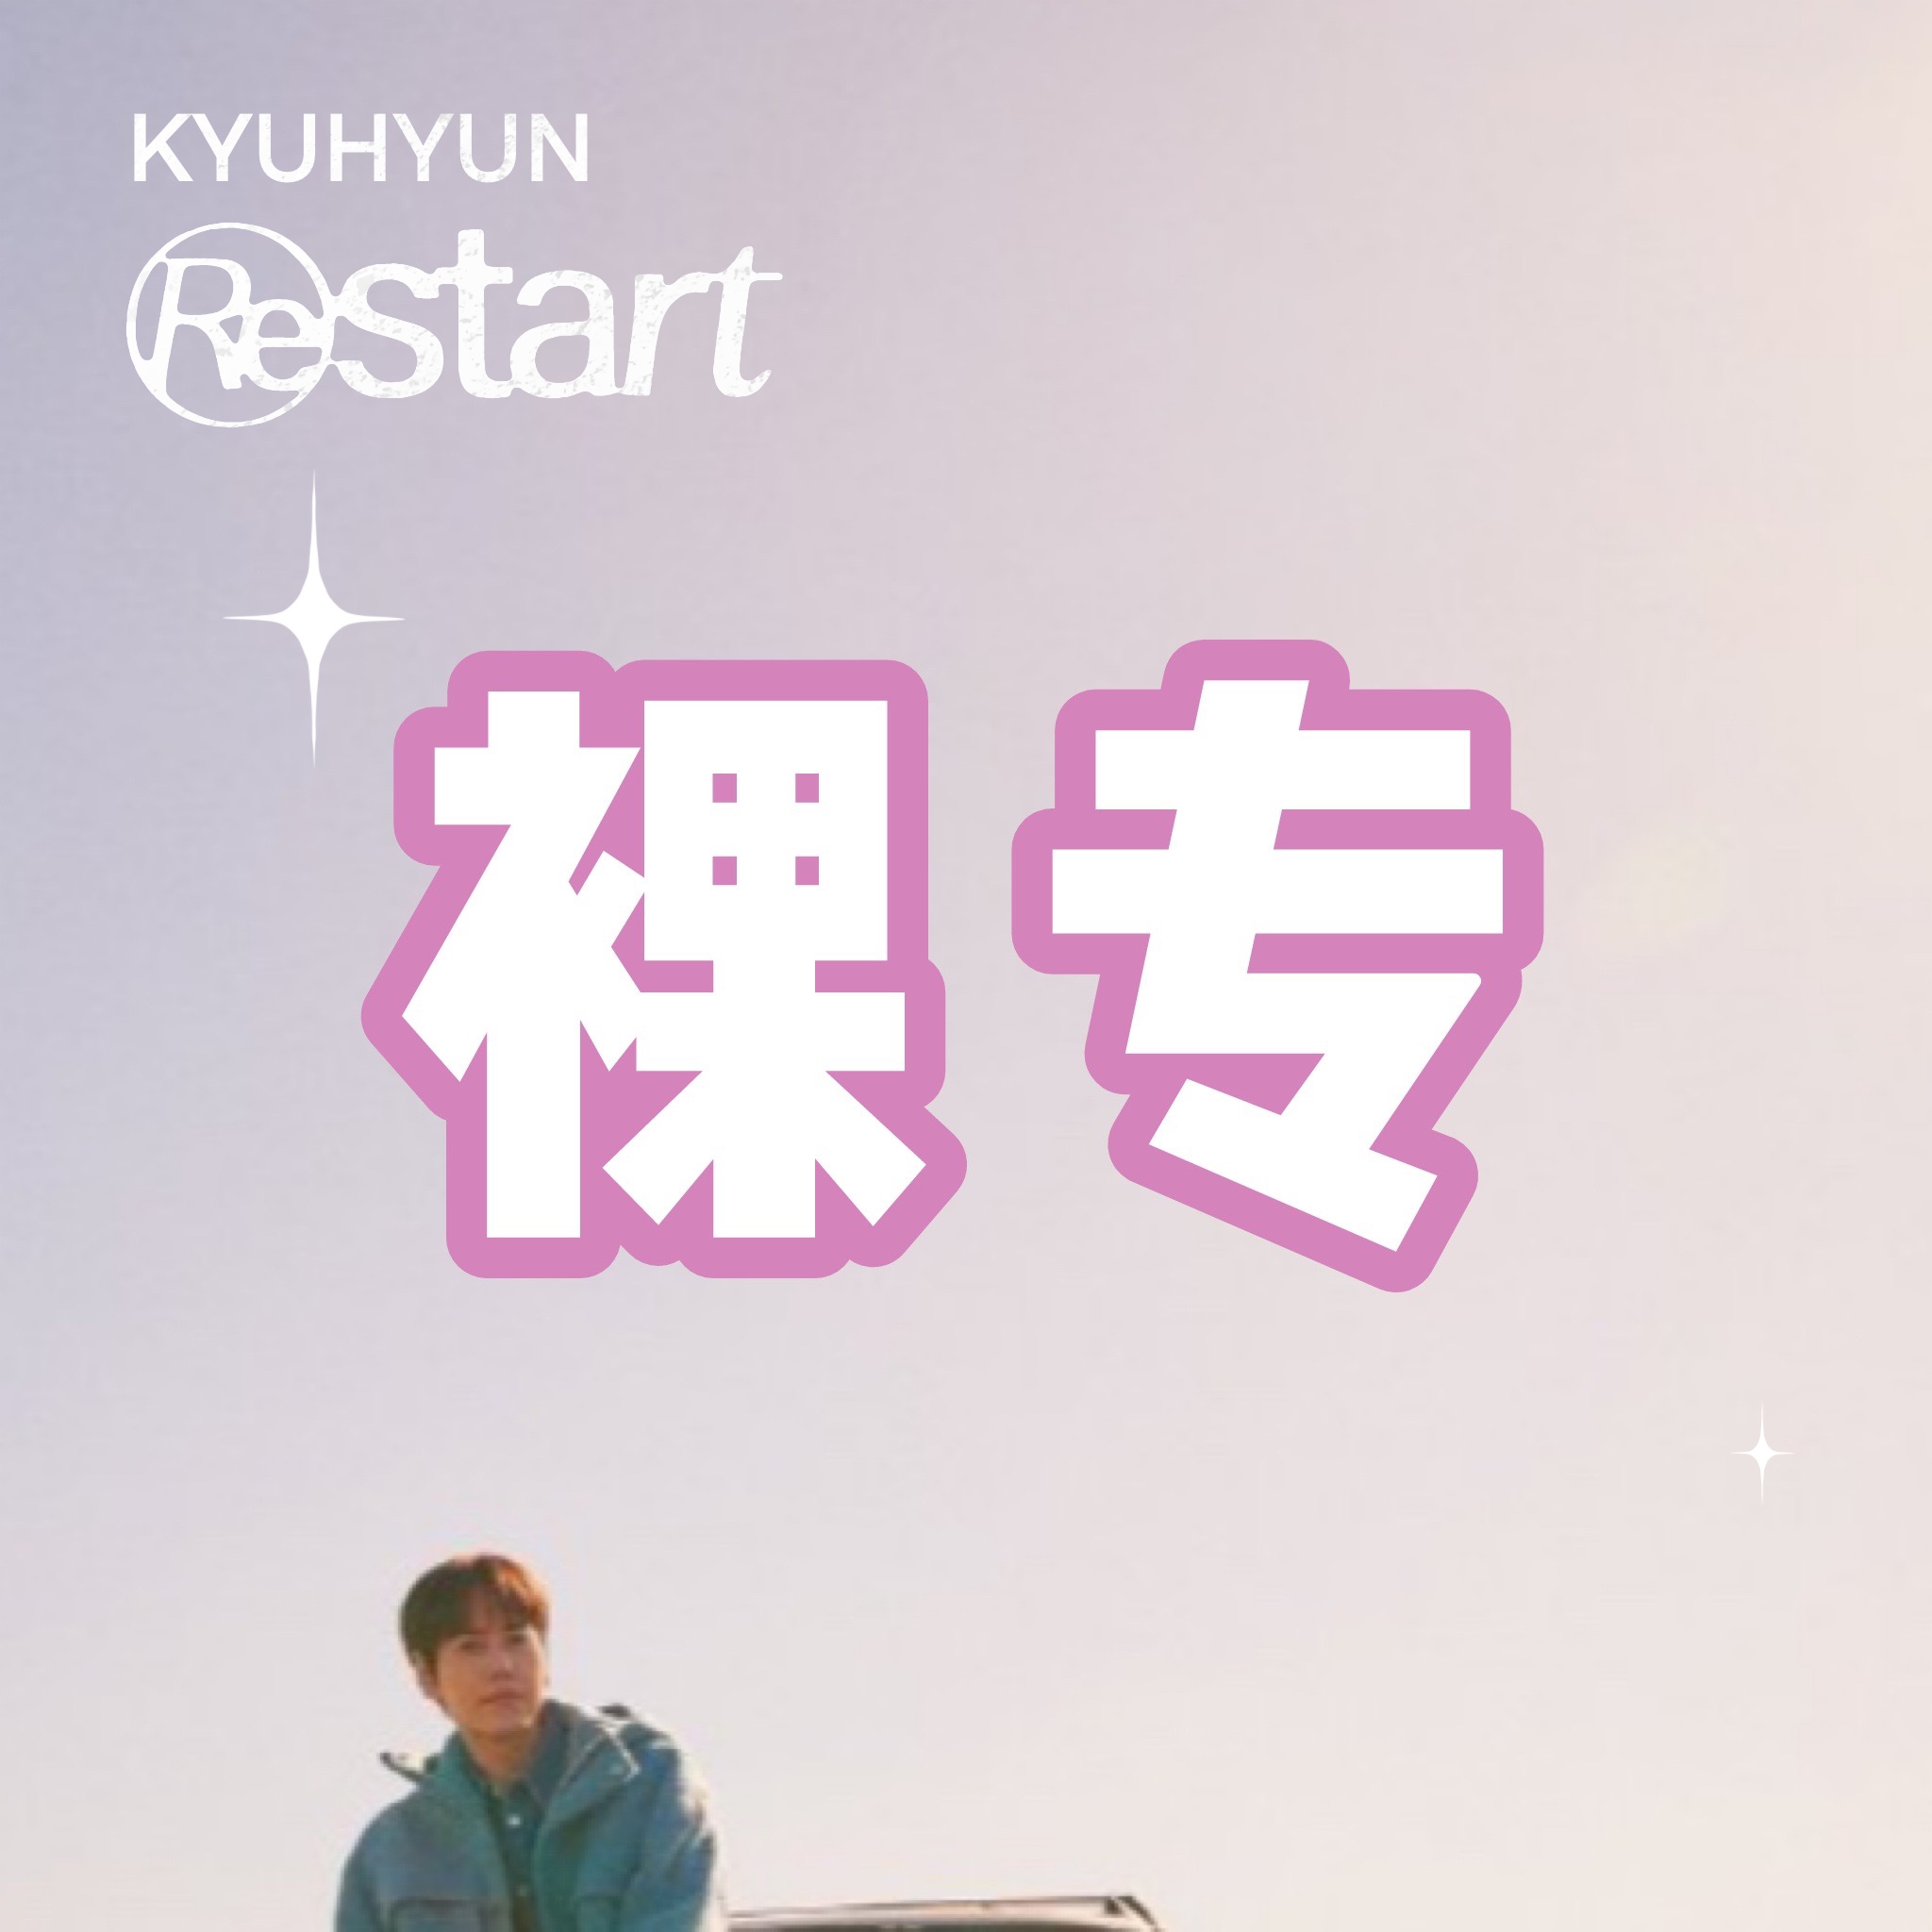 [全款 裸专] [Ktown4u特典赠送] 曺圭贤 - EP 专辑 [Restart] (Random Ver.)_WishingStar_圭贤许愿星